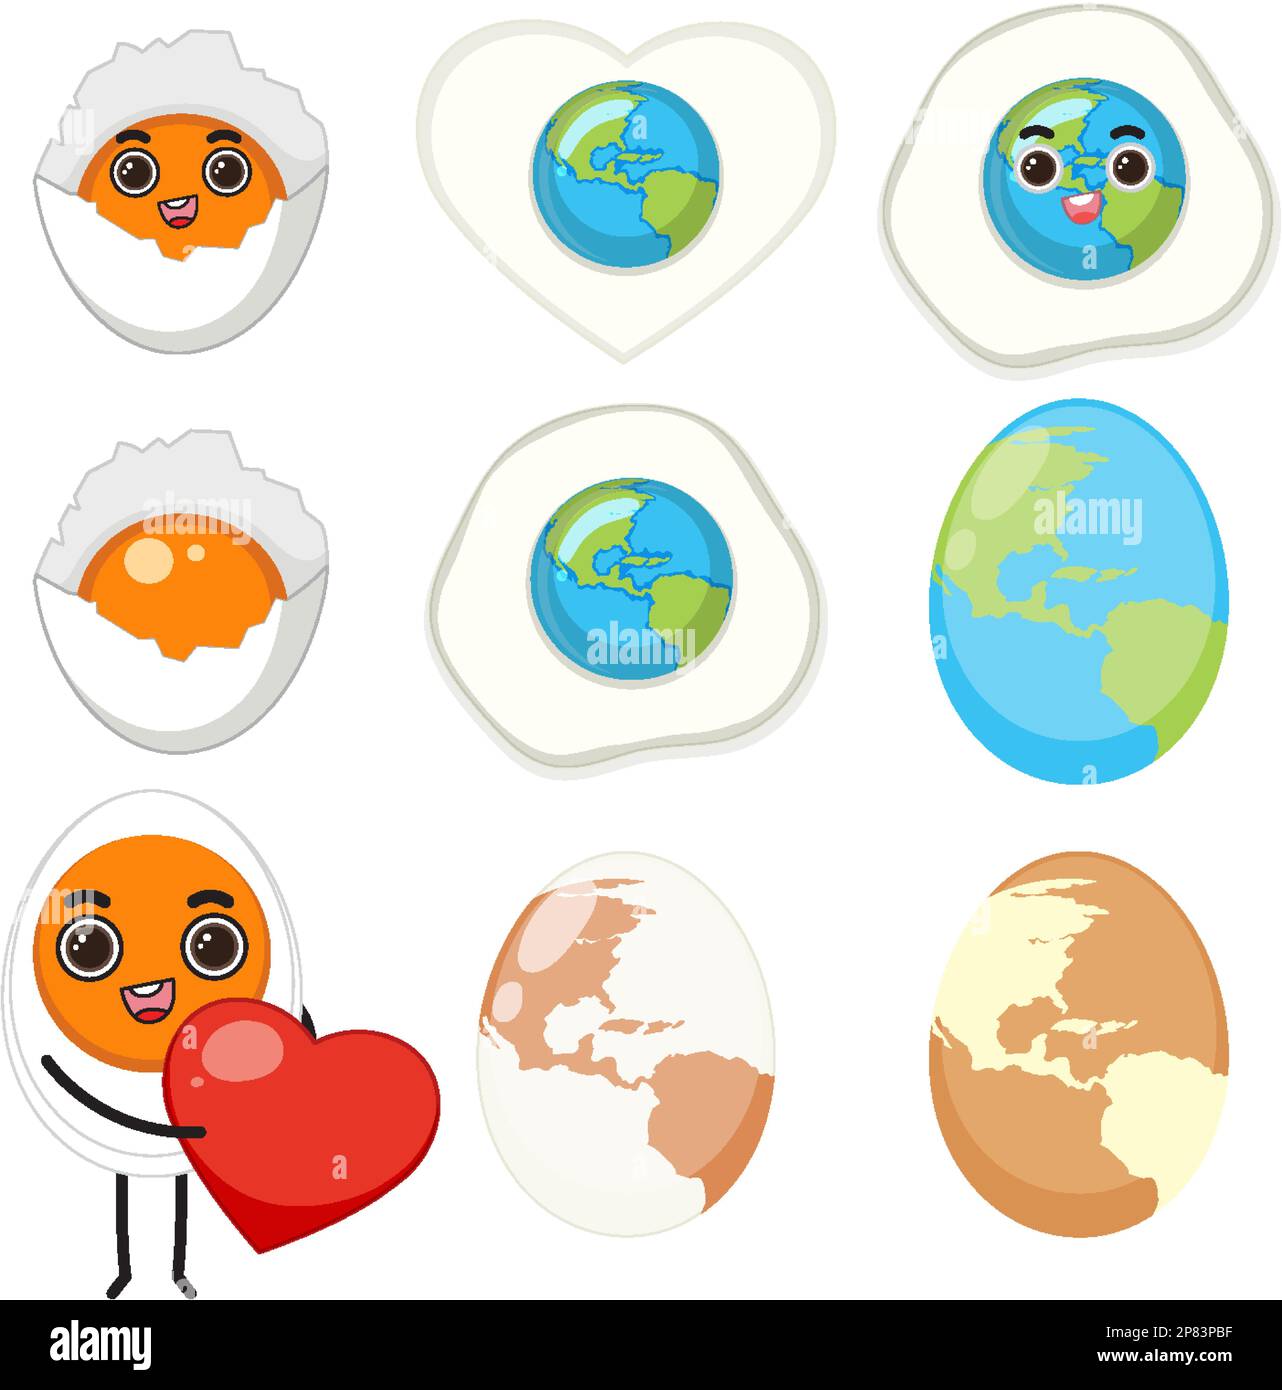 Illustration des personnages de dessin animé de l'ensemble des œufs Illustration de Vecteur